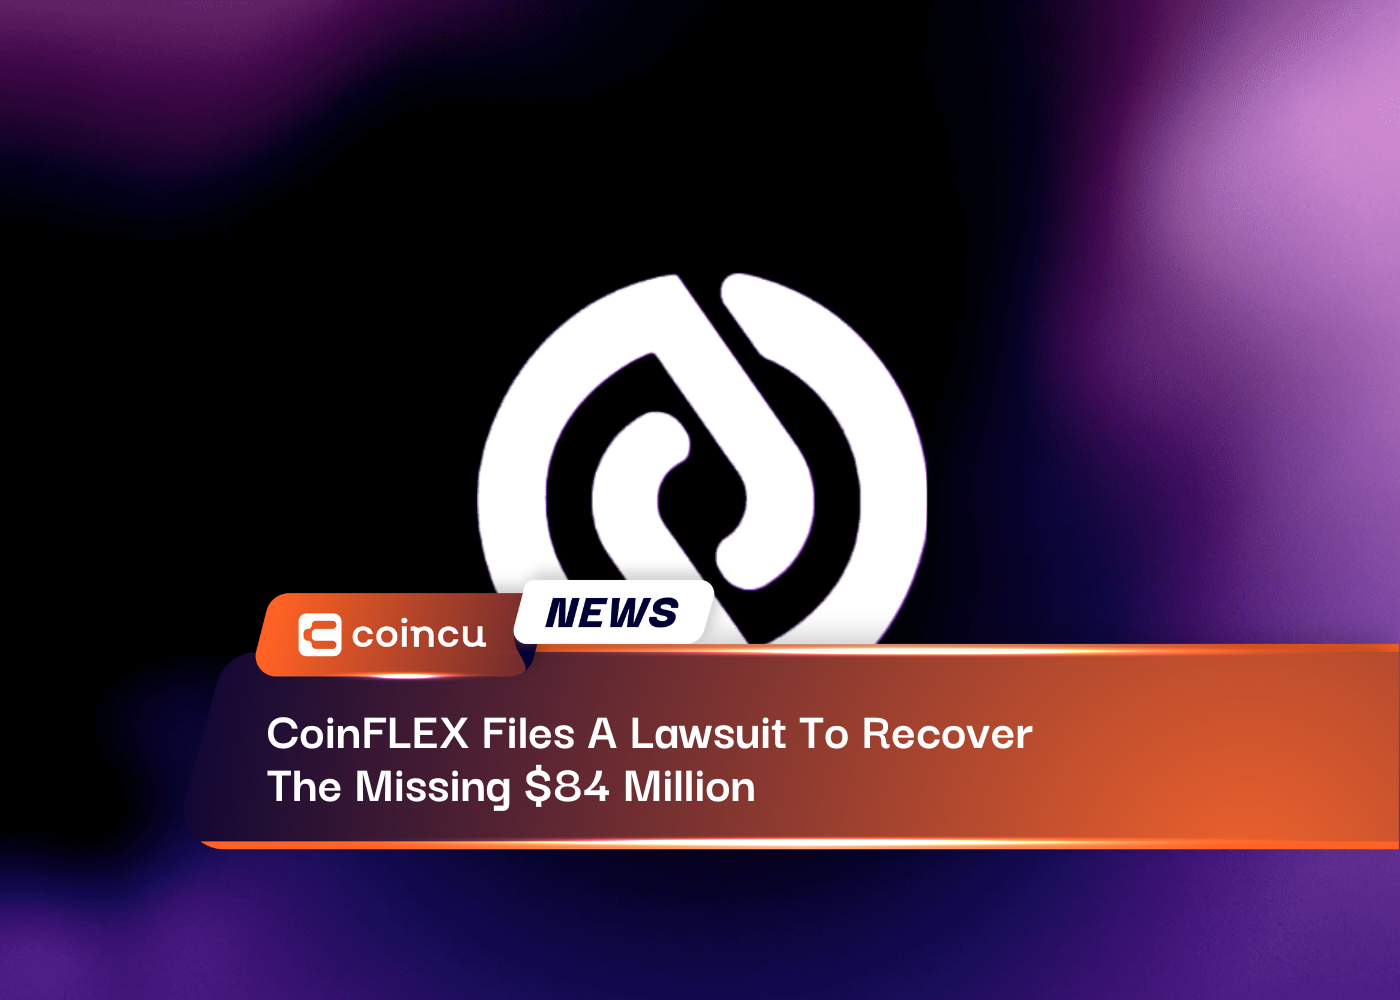 CoinFLEX、失われた84万ドルを取り戻すために訴訟を起こす